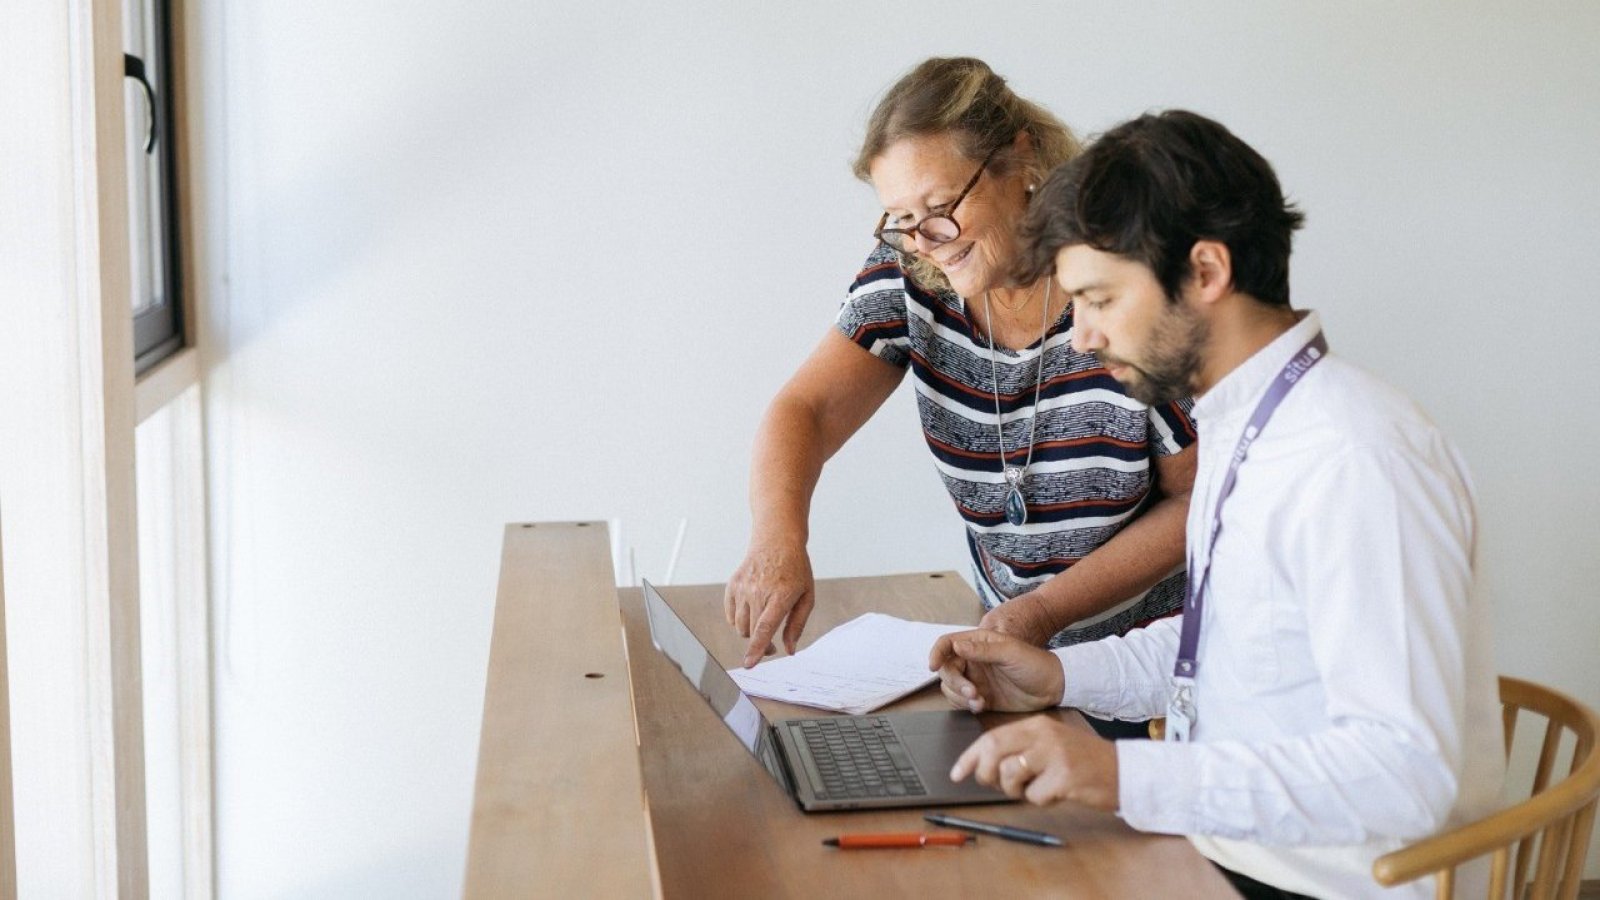 Mujer y hombre revisando un computador